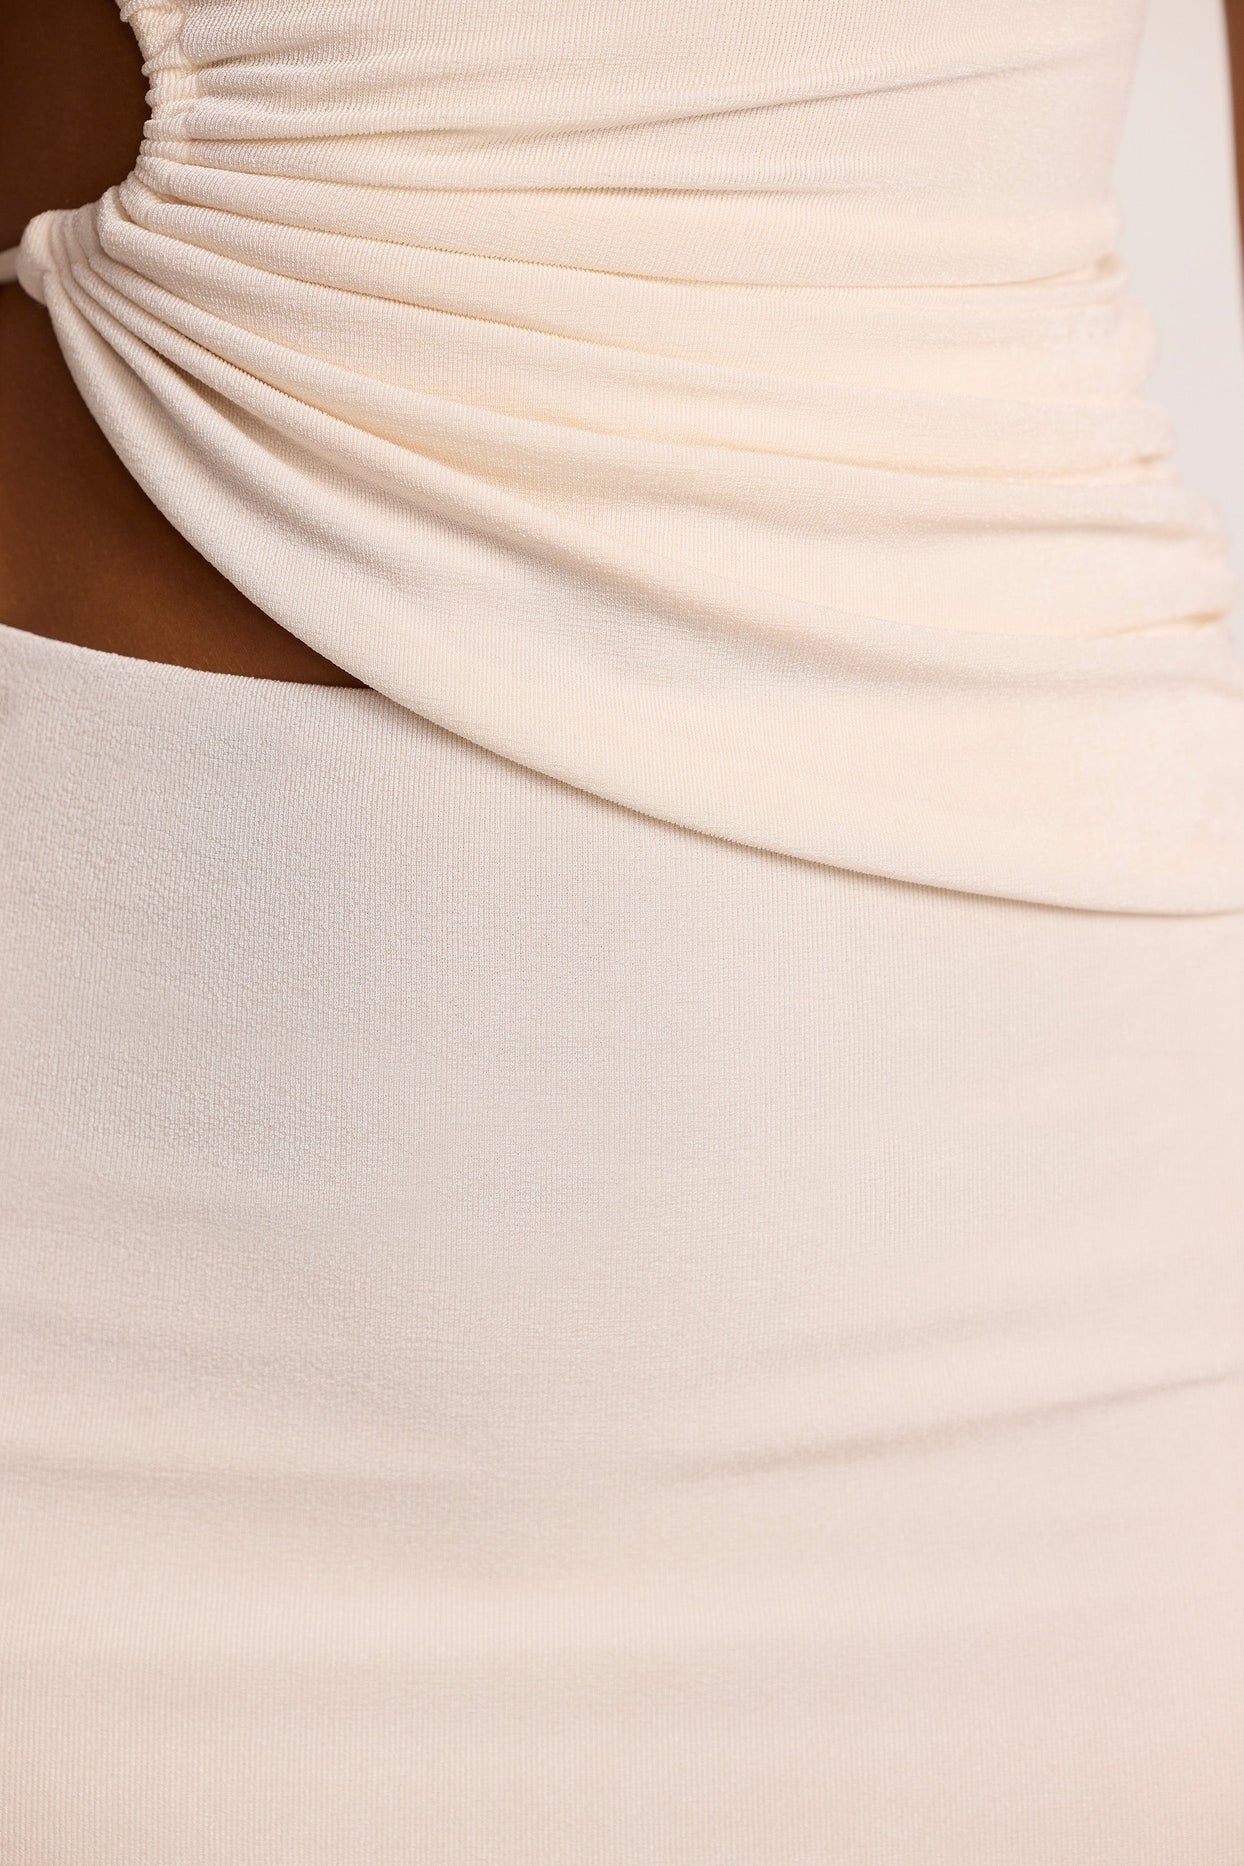 Blusa de jérsei texturizada com recorte franzido e um ombro em marfim